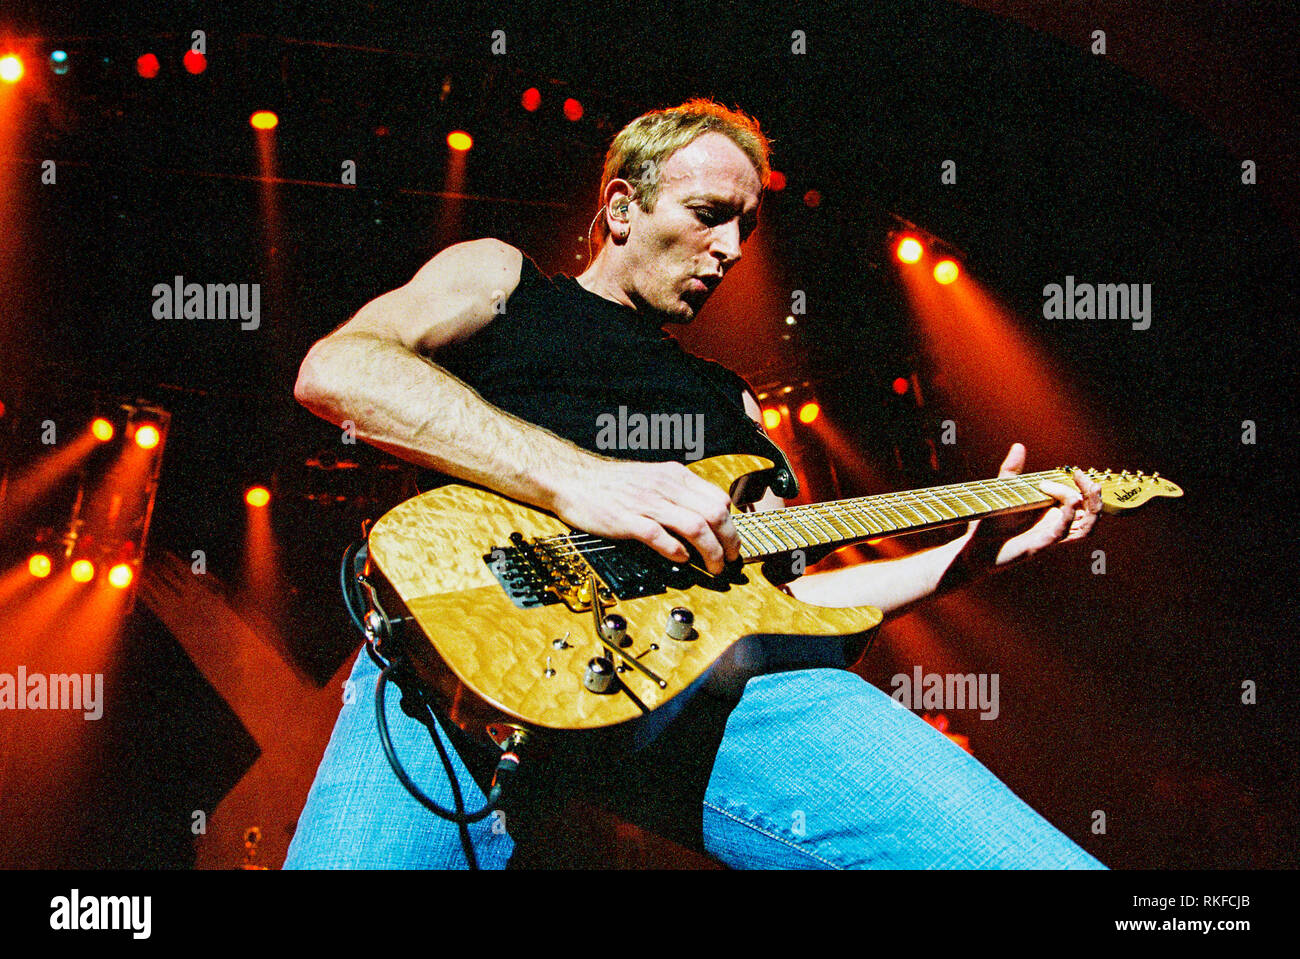 Phil Collen chitarrista solista nella banda Def Leppard esecuzione alla Brixton Academy 27 febbraio 2003, Londra, Inghilterra, Regno Unito. Foto Stock